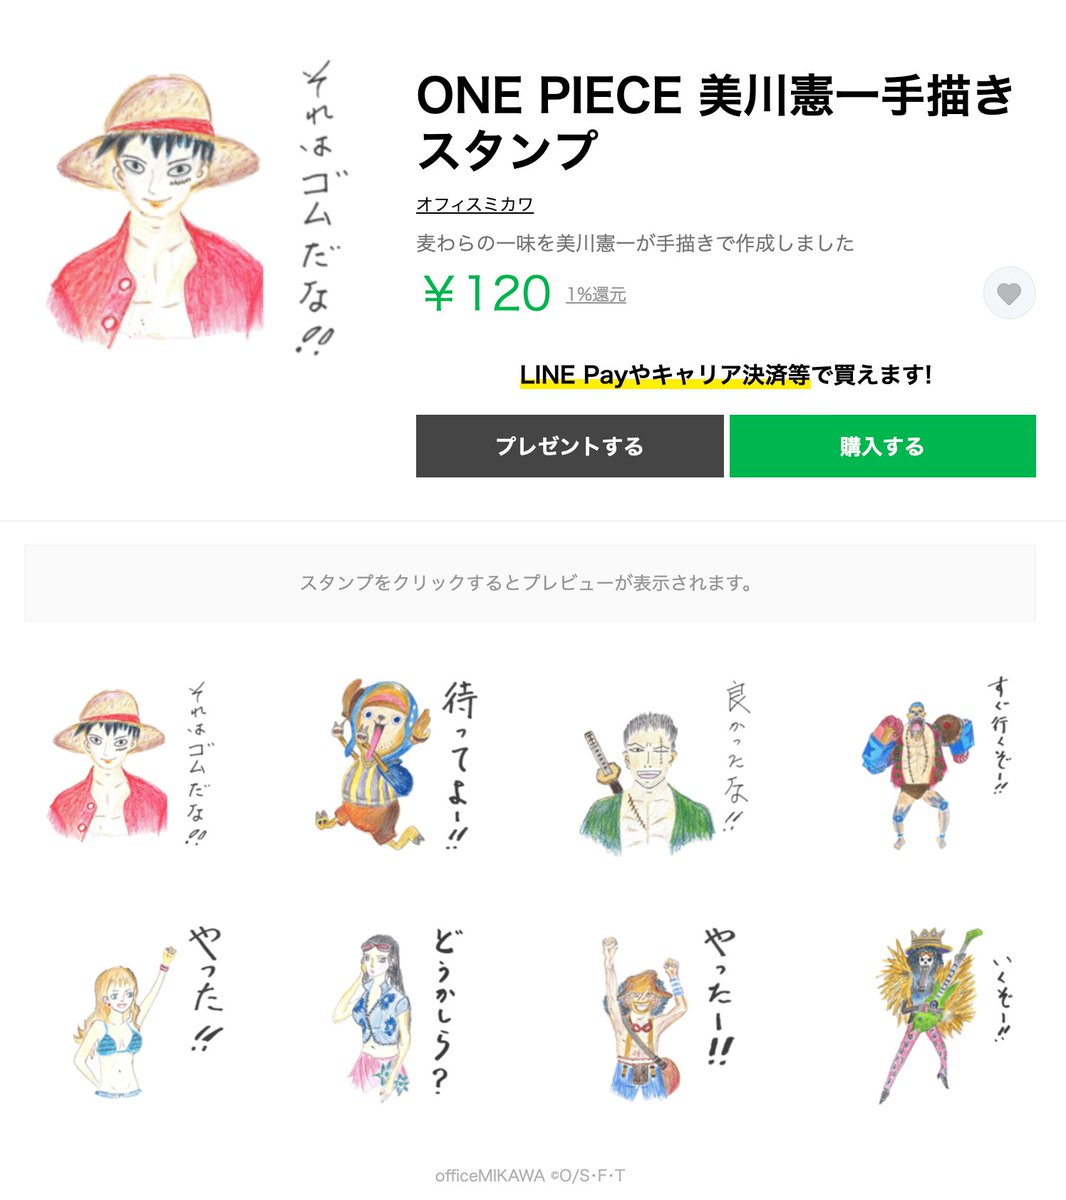 美川憲一さんが手描きした One Piece のlineスタンプ それはゴムだな 使い所が謎すぎると話題に Togetter